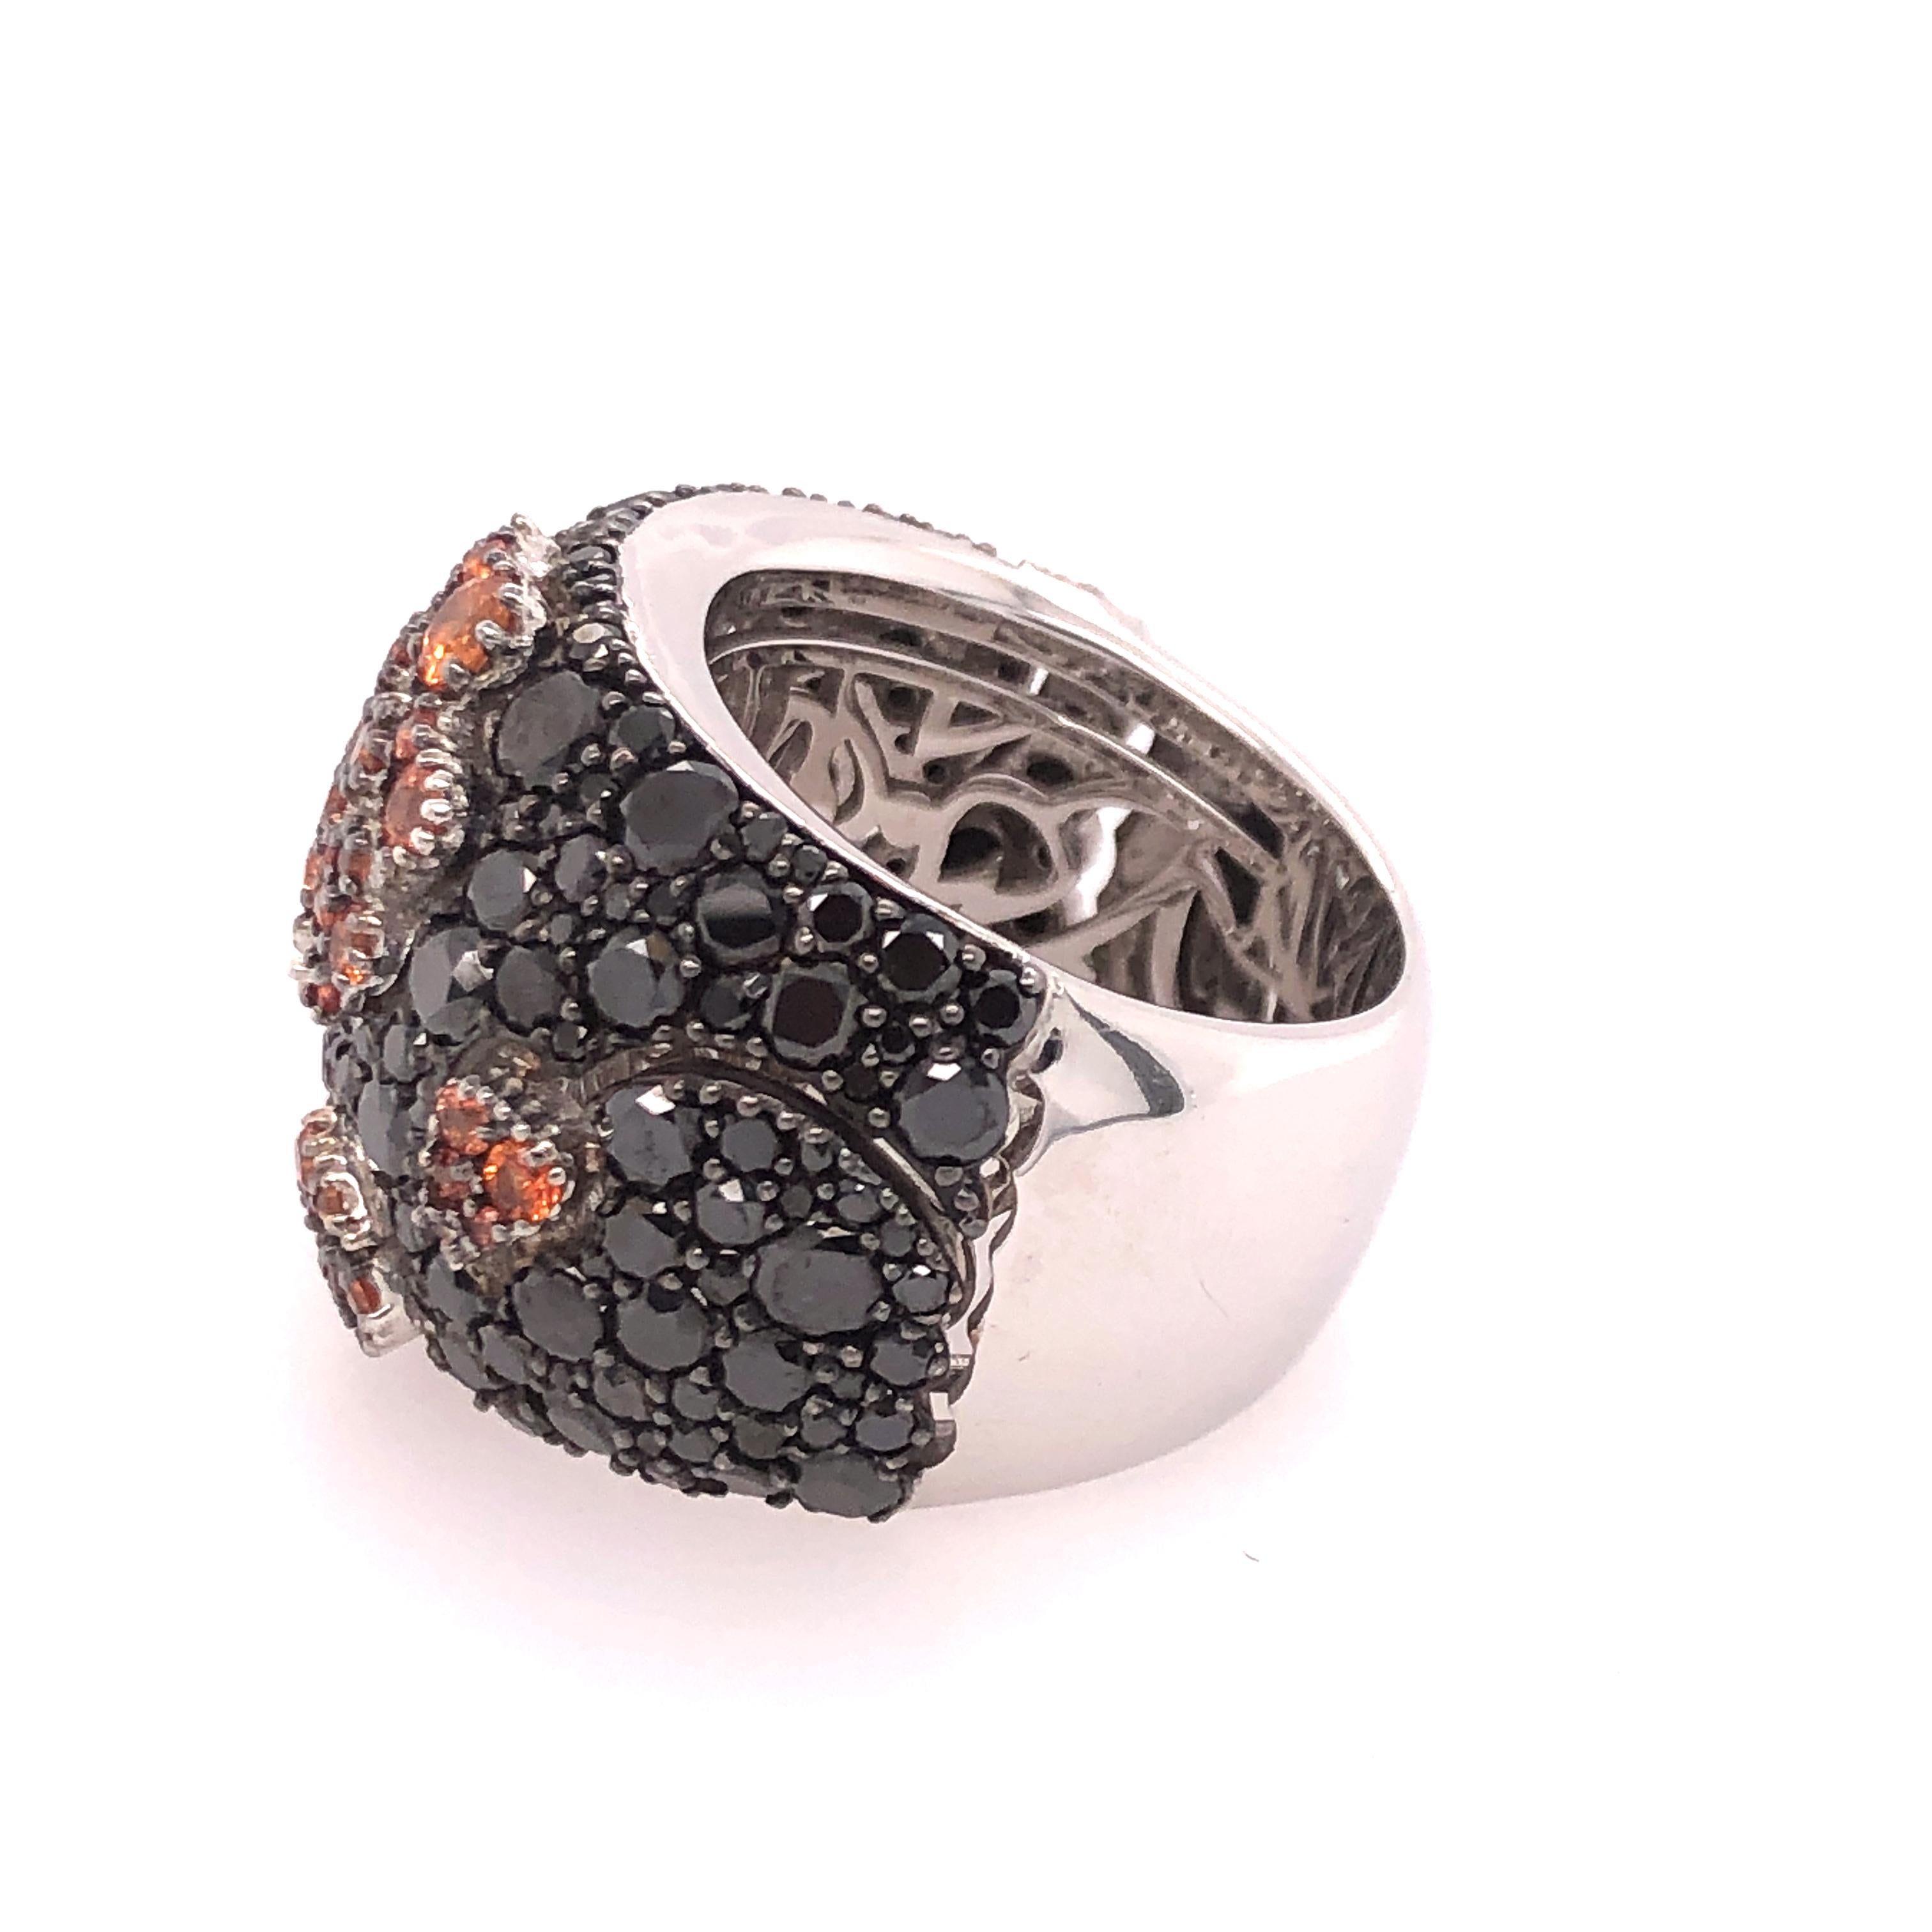 Stefan Hafner White Gold Orange and Black Sapphire Ring 2